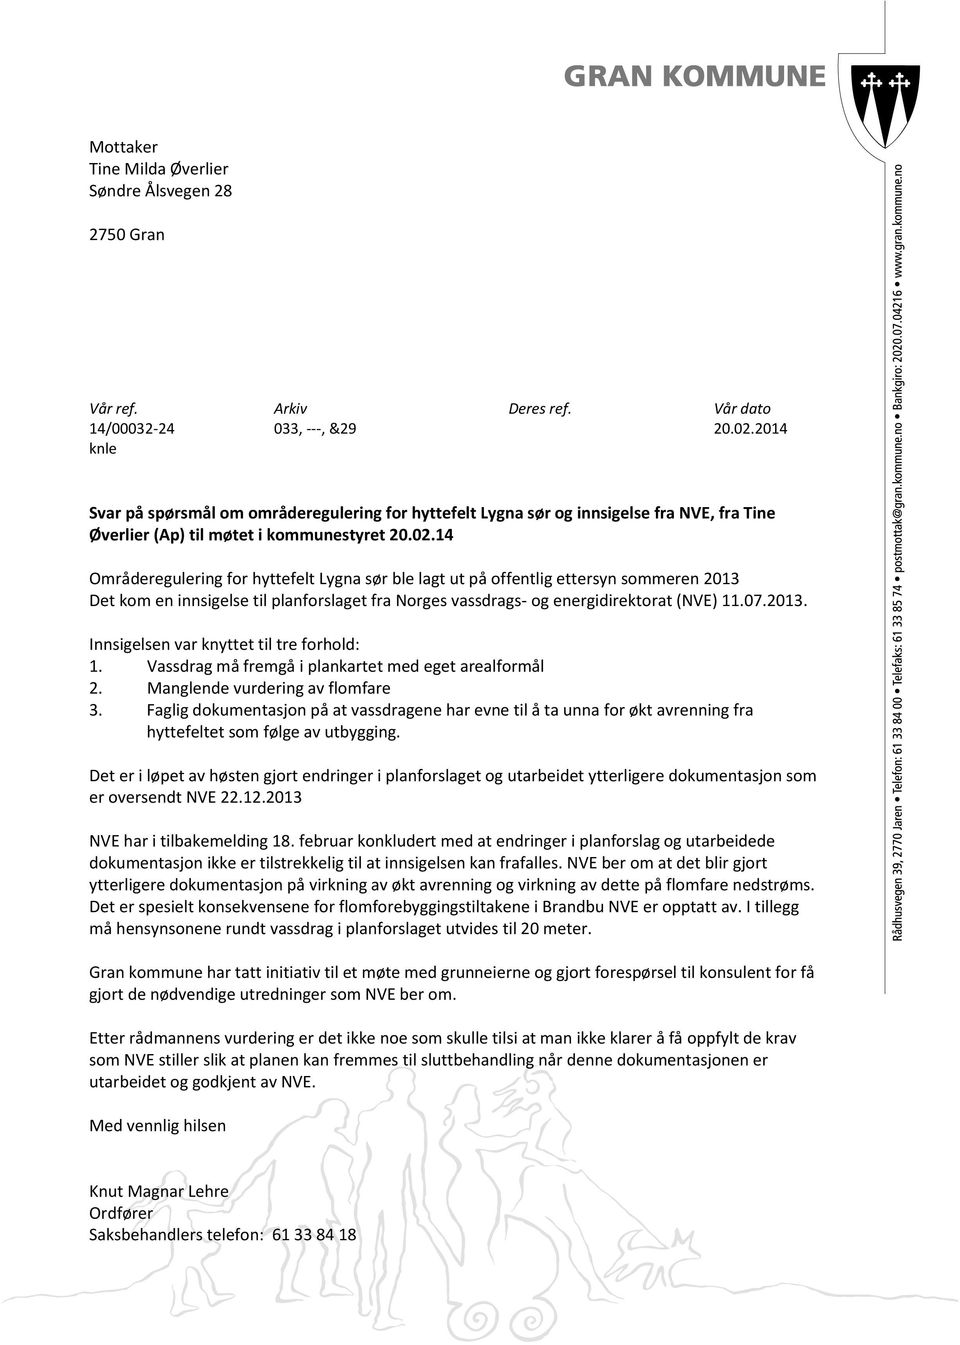 14 Områderegulering for hyttefelt Lygna sør ble lagt ut på offentlig ettersyn sommeren 2013 Det kom en innsigelse til planforslaget fra Norges vassdrags- og energidirektorat (NVE) 11.07.2013. Innsigelsen var knyttet til tre forhold: 1.